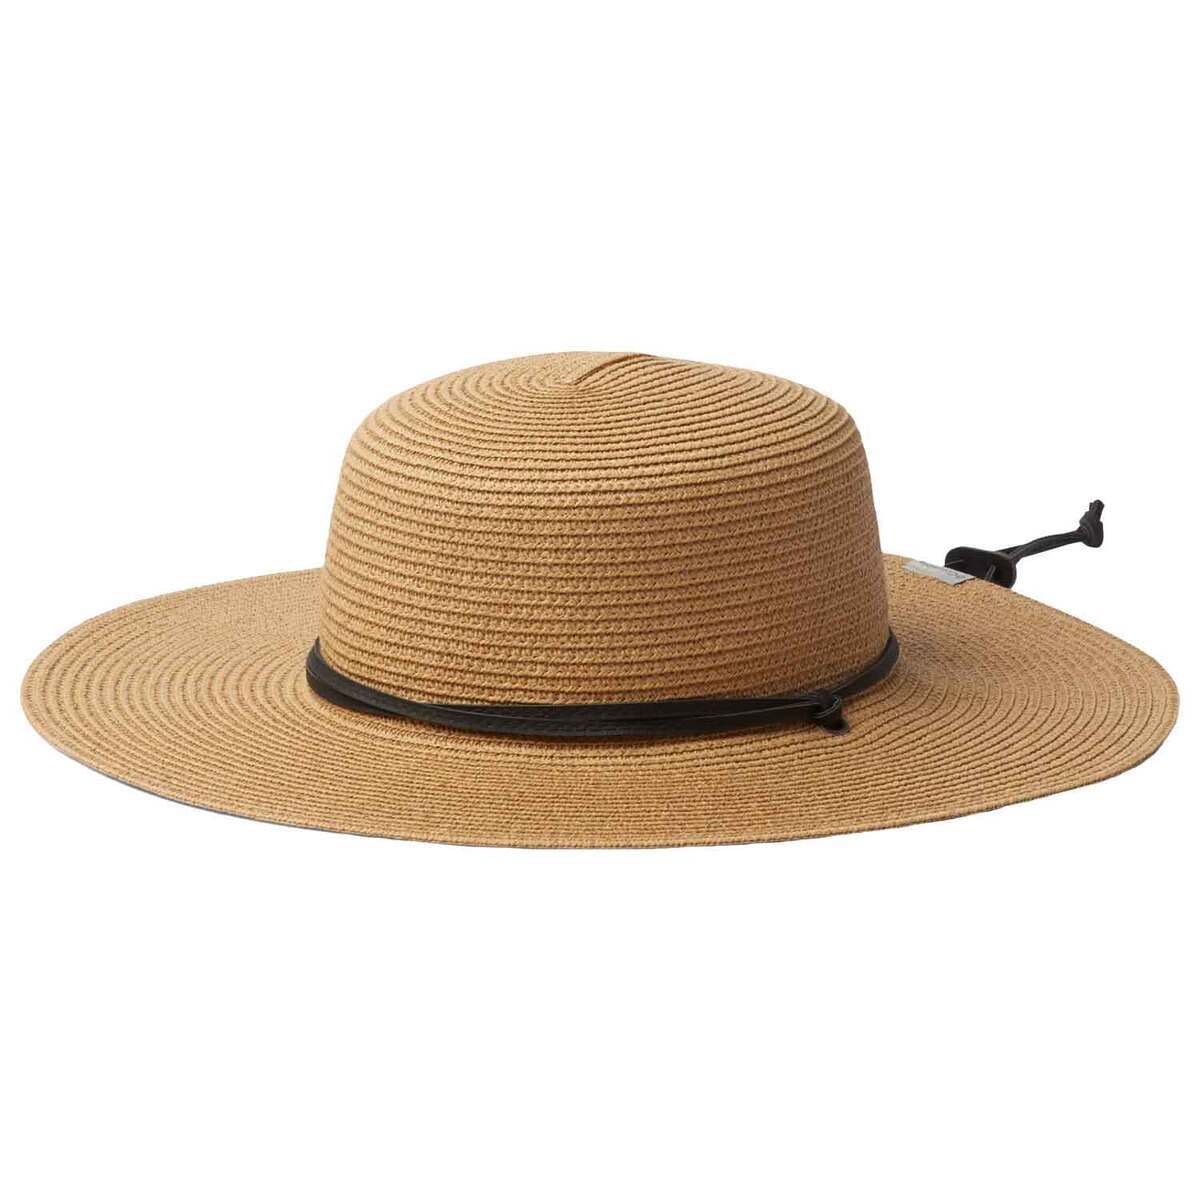 Columbia's Global Adventure Packable II Sun Hat